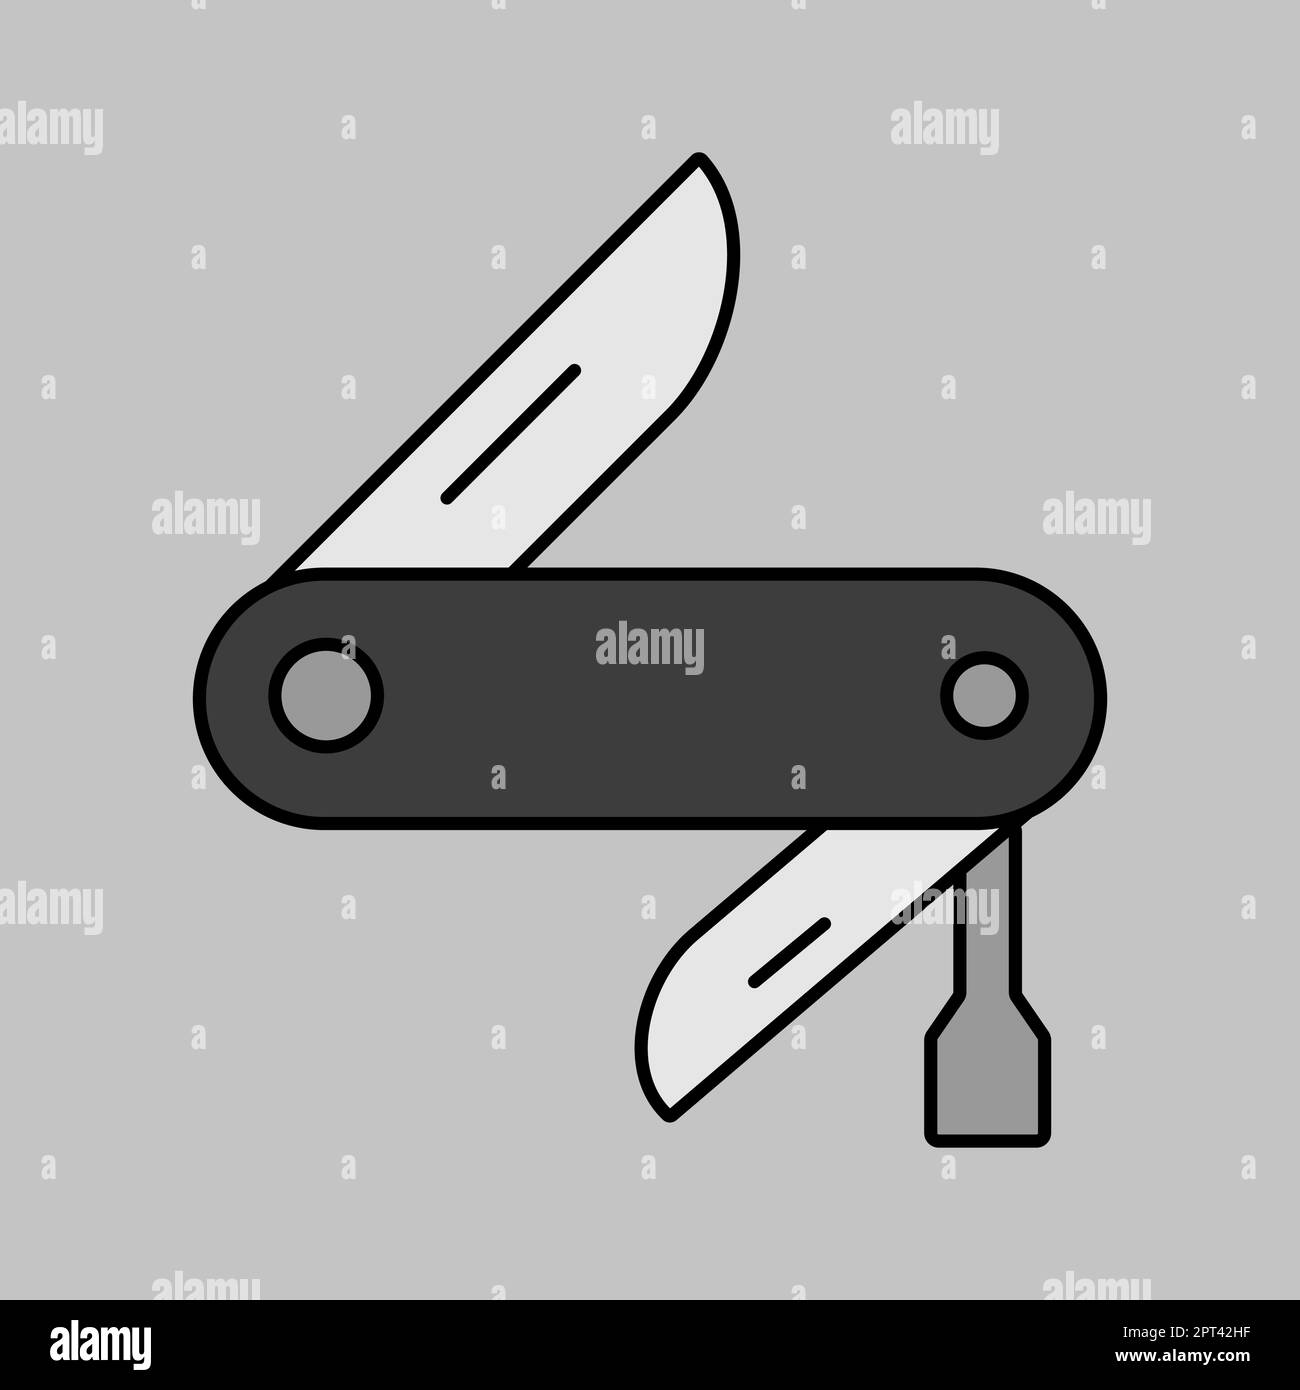 Icona scala di grigi vettore jackknife. Cartello Camping Illustrazione Vettoriale